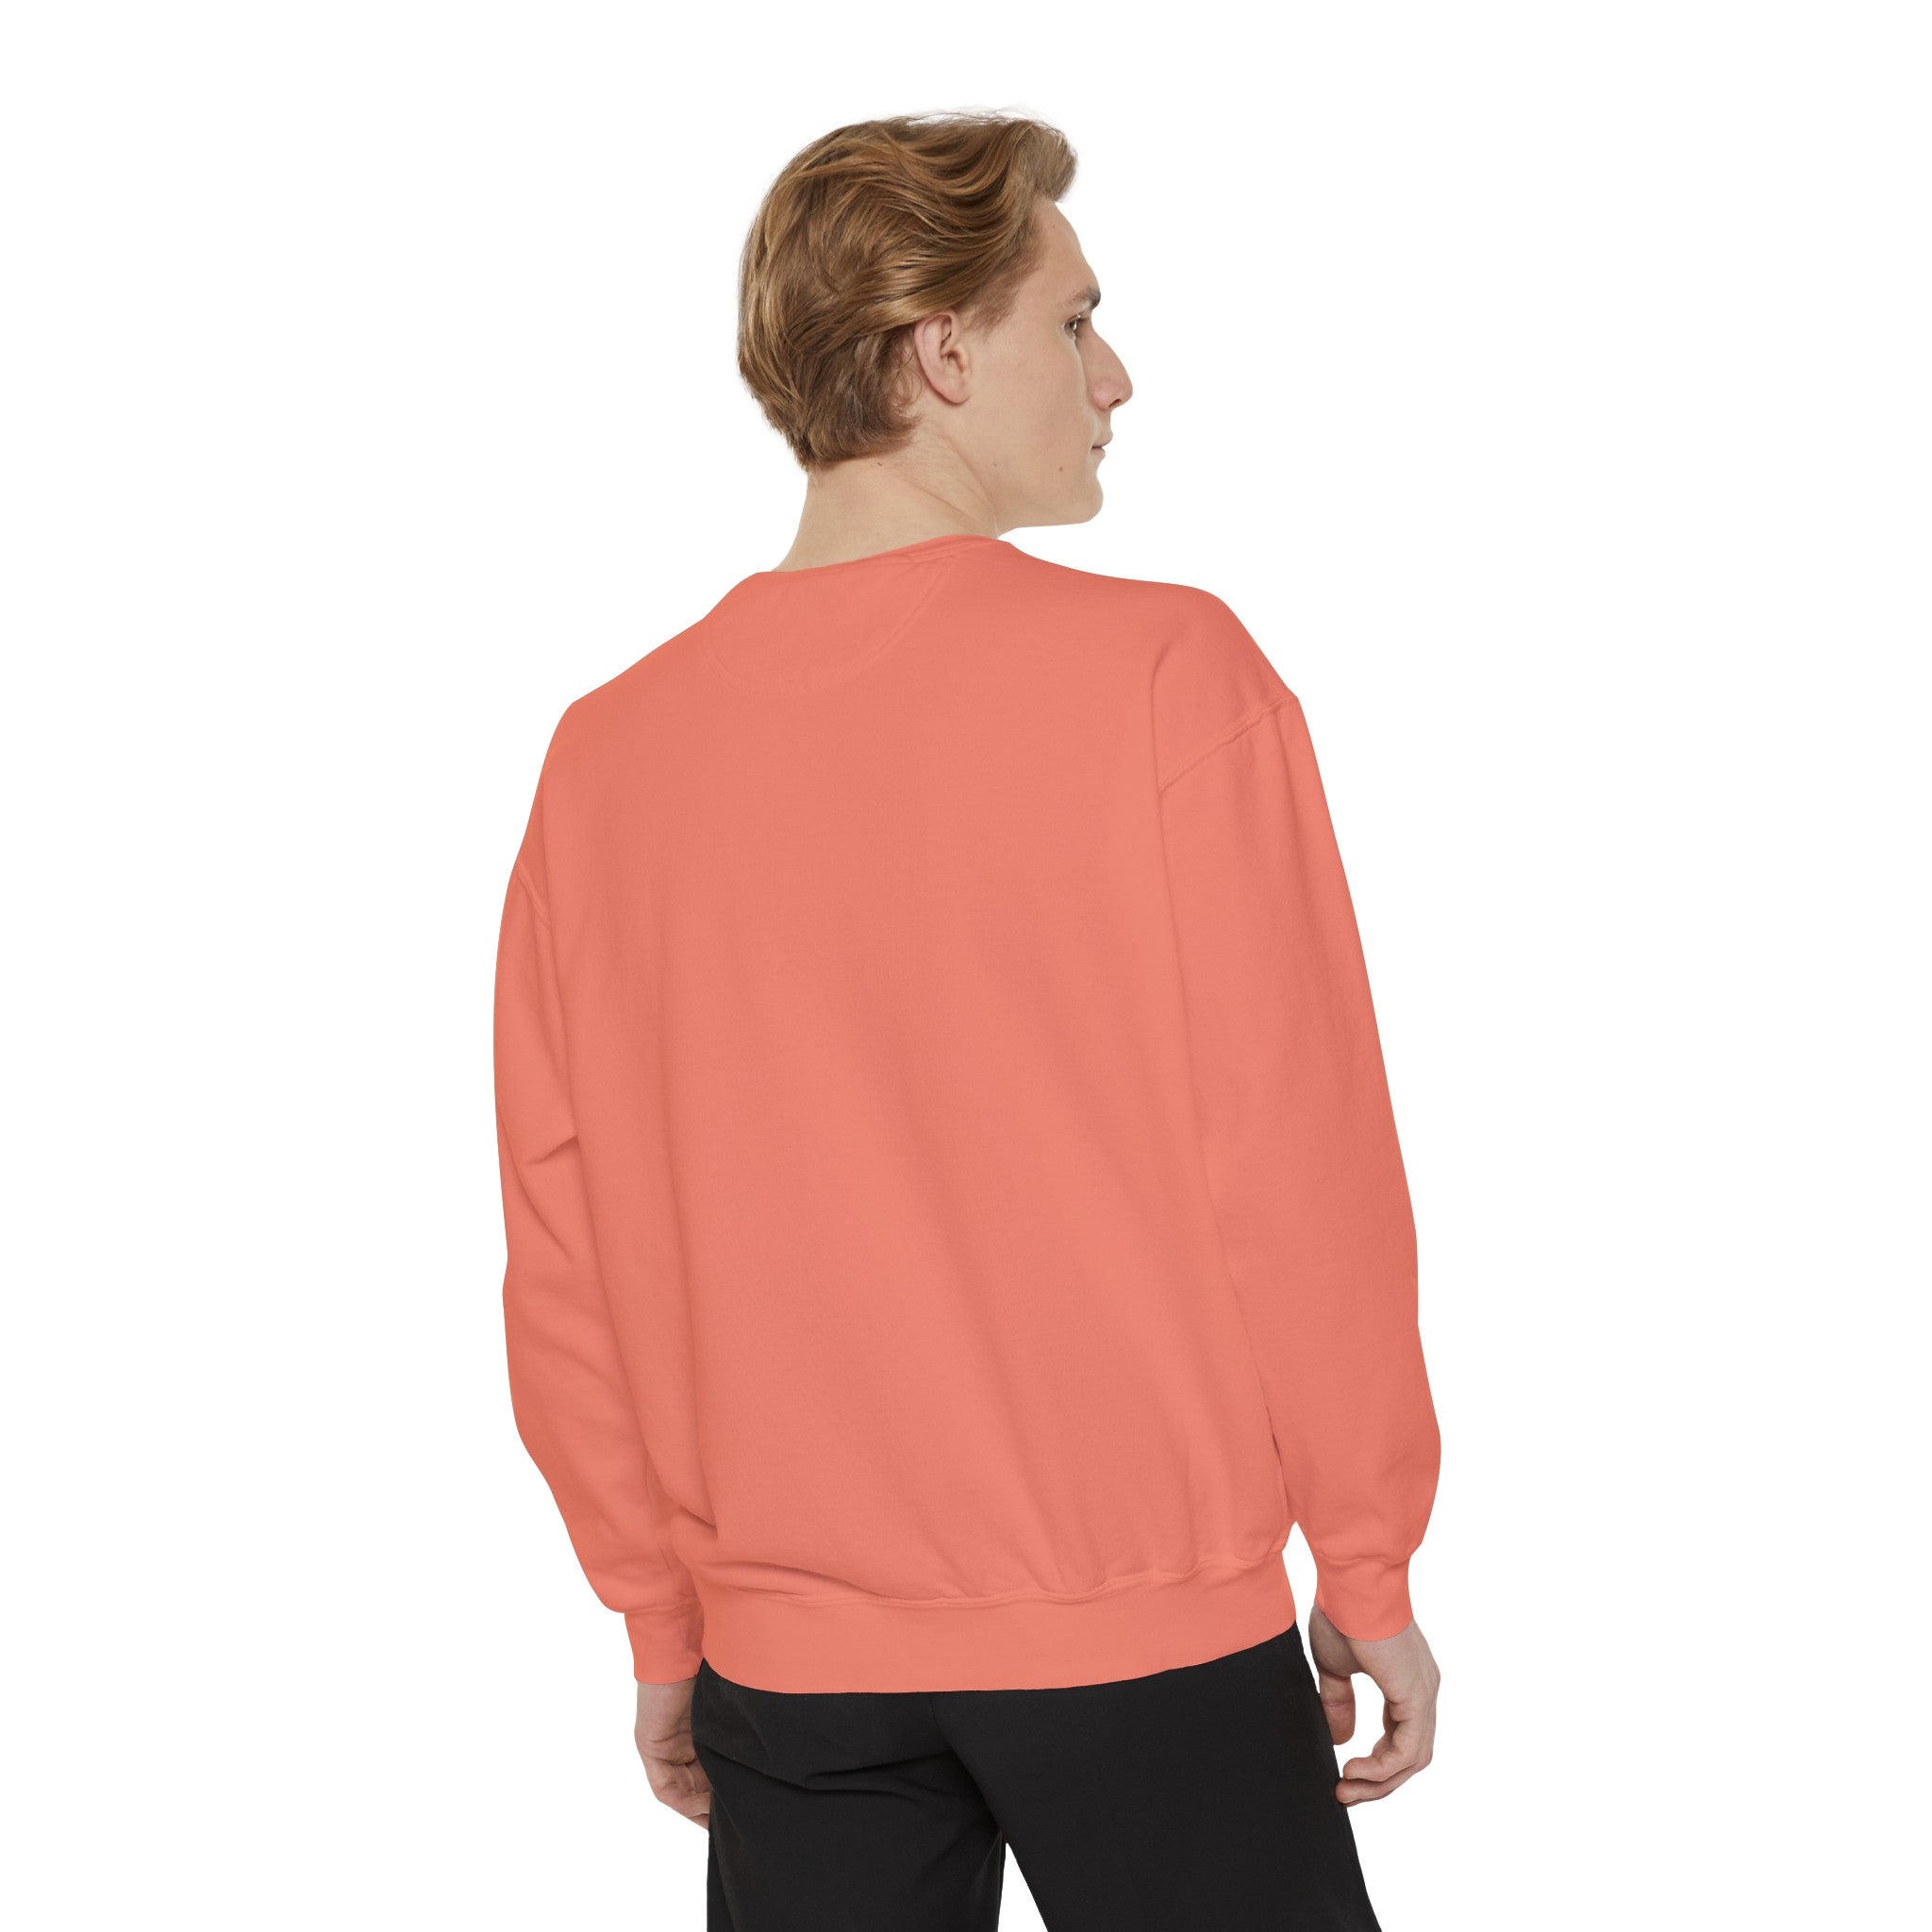 Blessed Mama - Unisex Garment-Dyed Sweatshirt